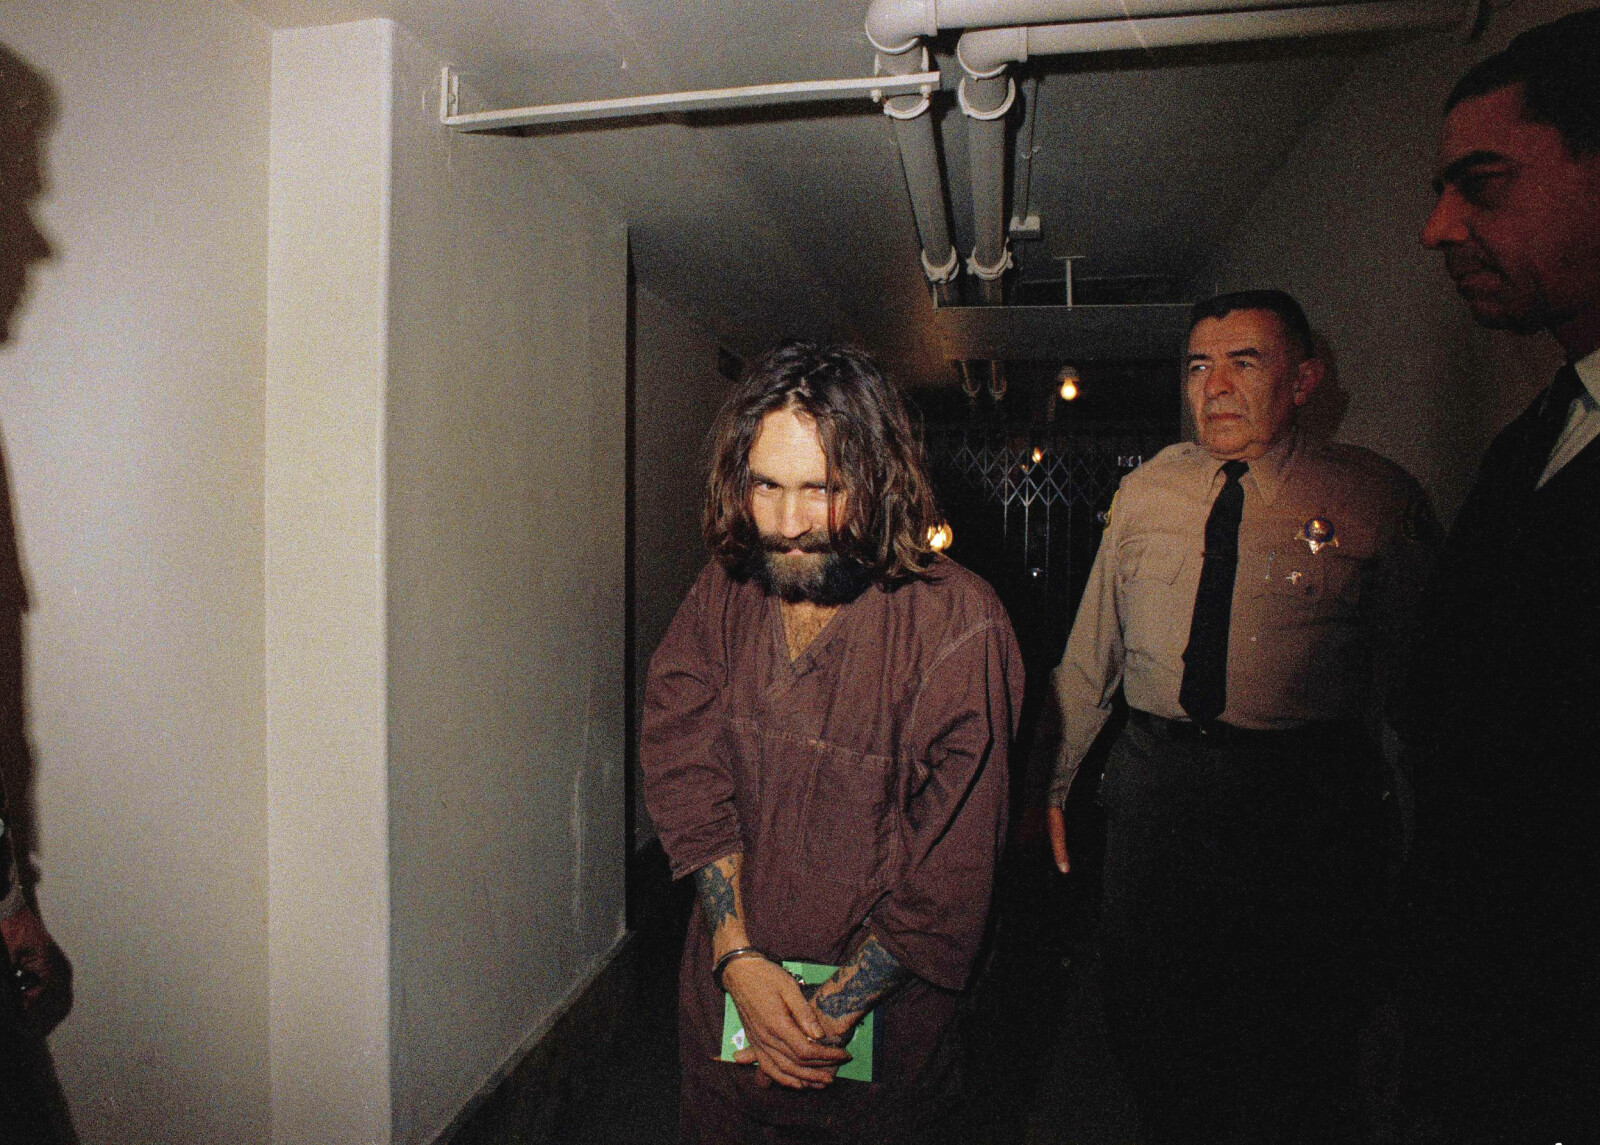 <b>MANIPULATOREN:</b> Charles Manson hadde hypnotisk makt over de andre i det halvreligiøse hippiesamfunnet han skapte <br/>ute i ørkenen i California. De drepte vilt fremmede personer uten å stille spørsmål. 